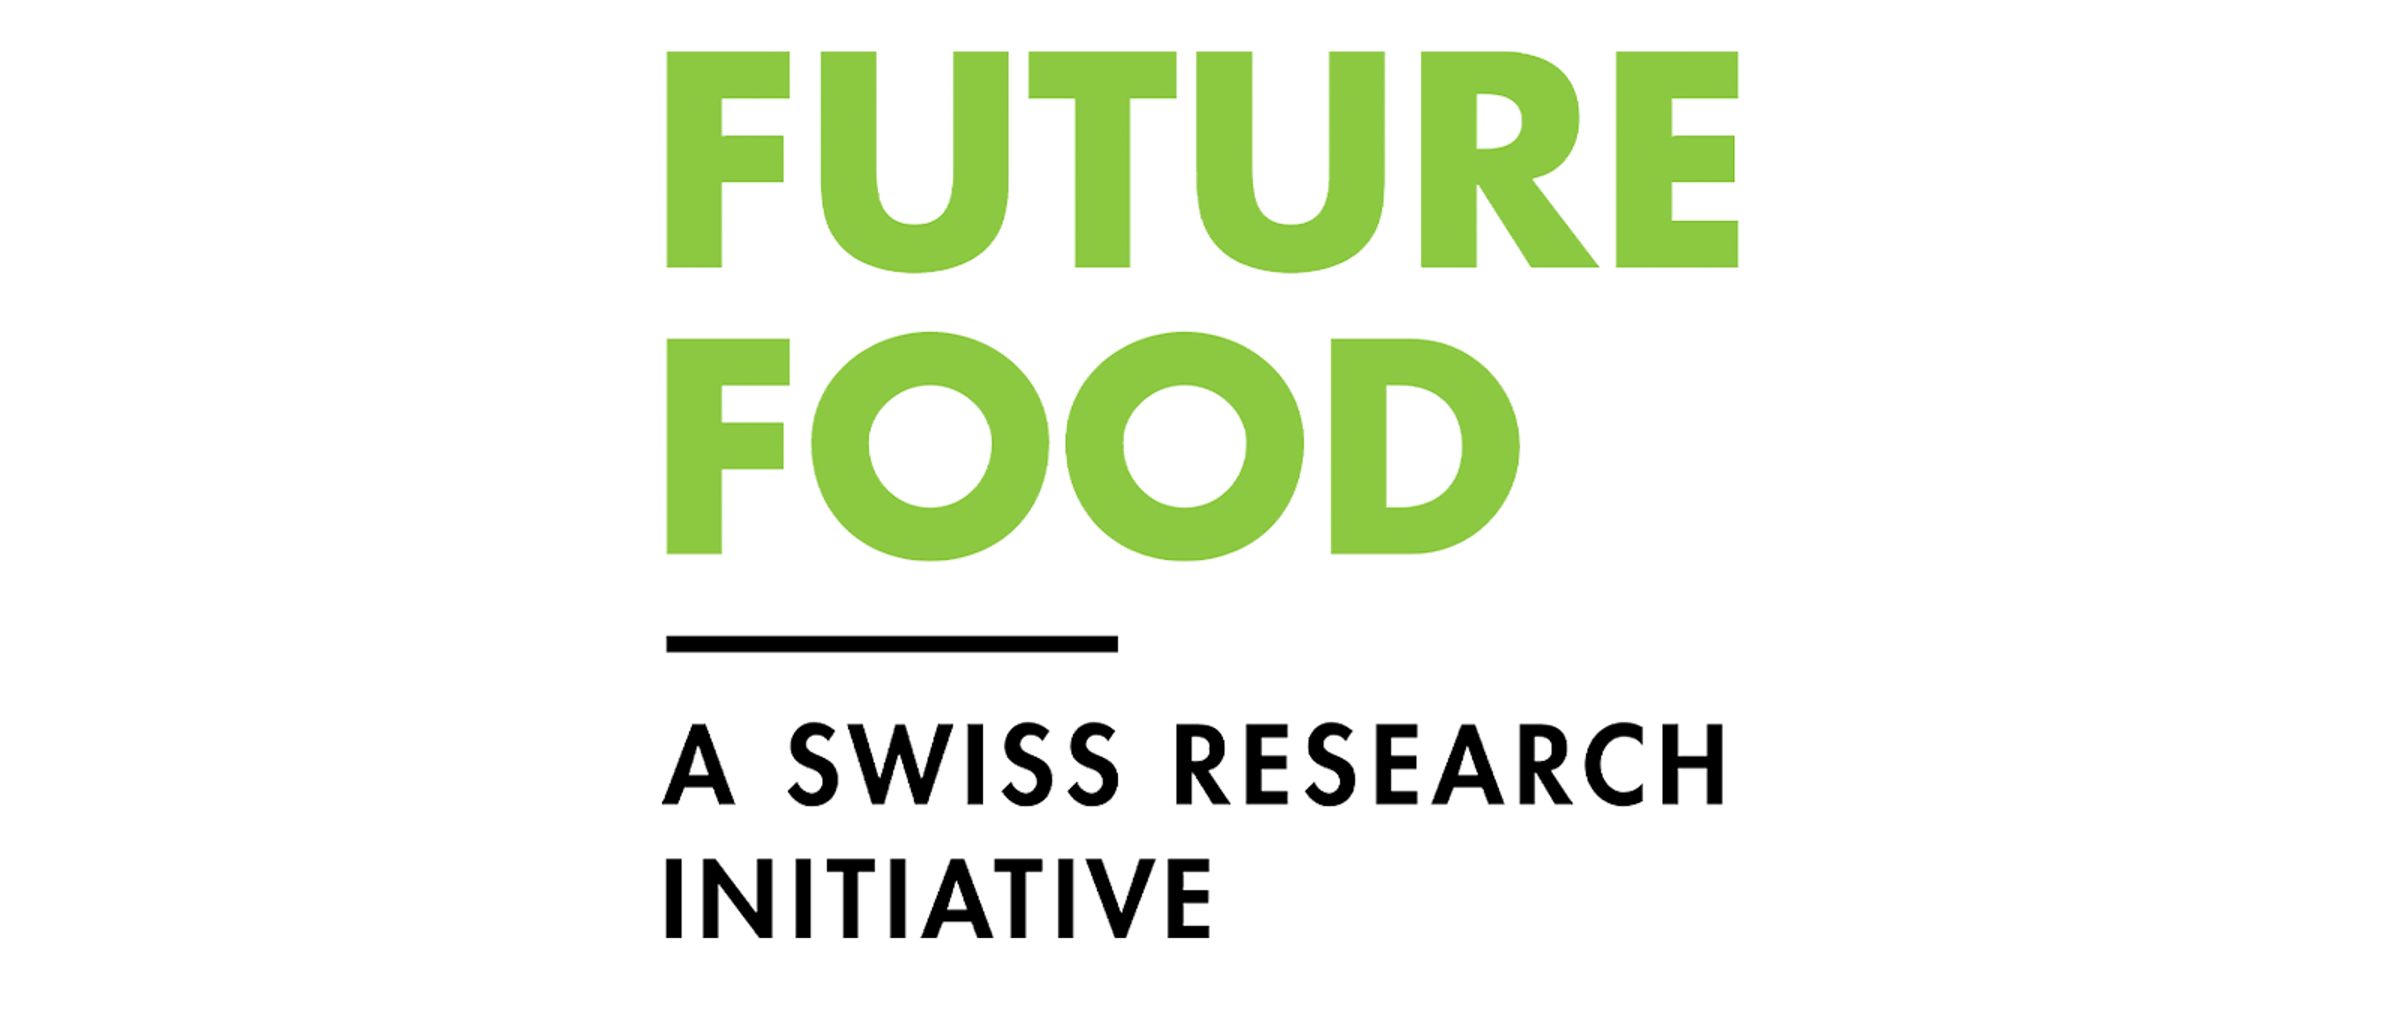 Future food logo